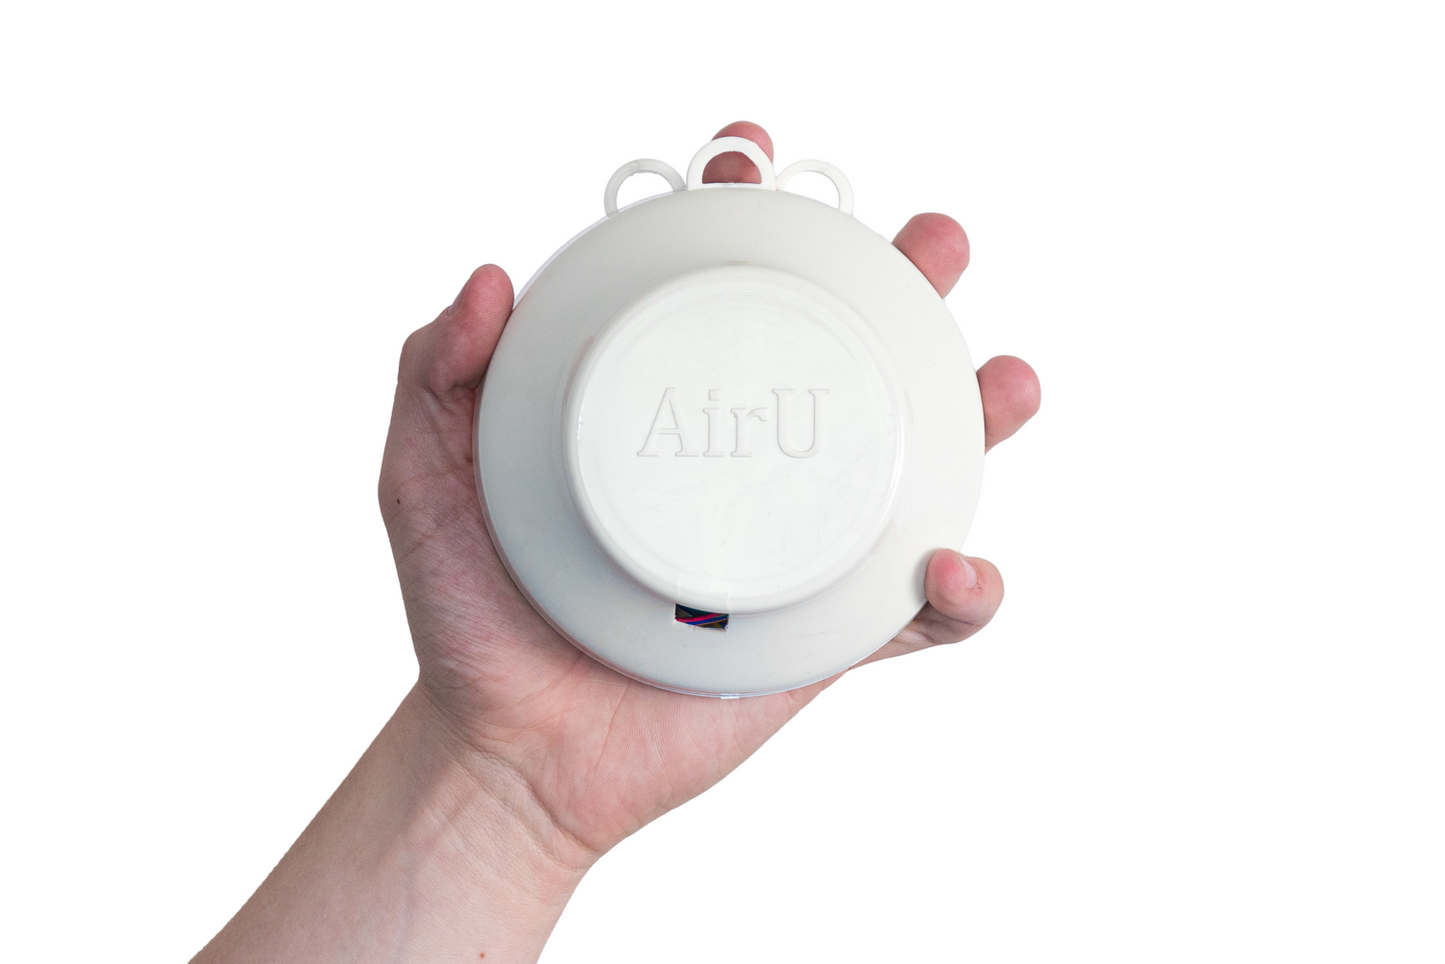 AirU (Wi-Fi)